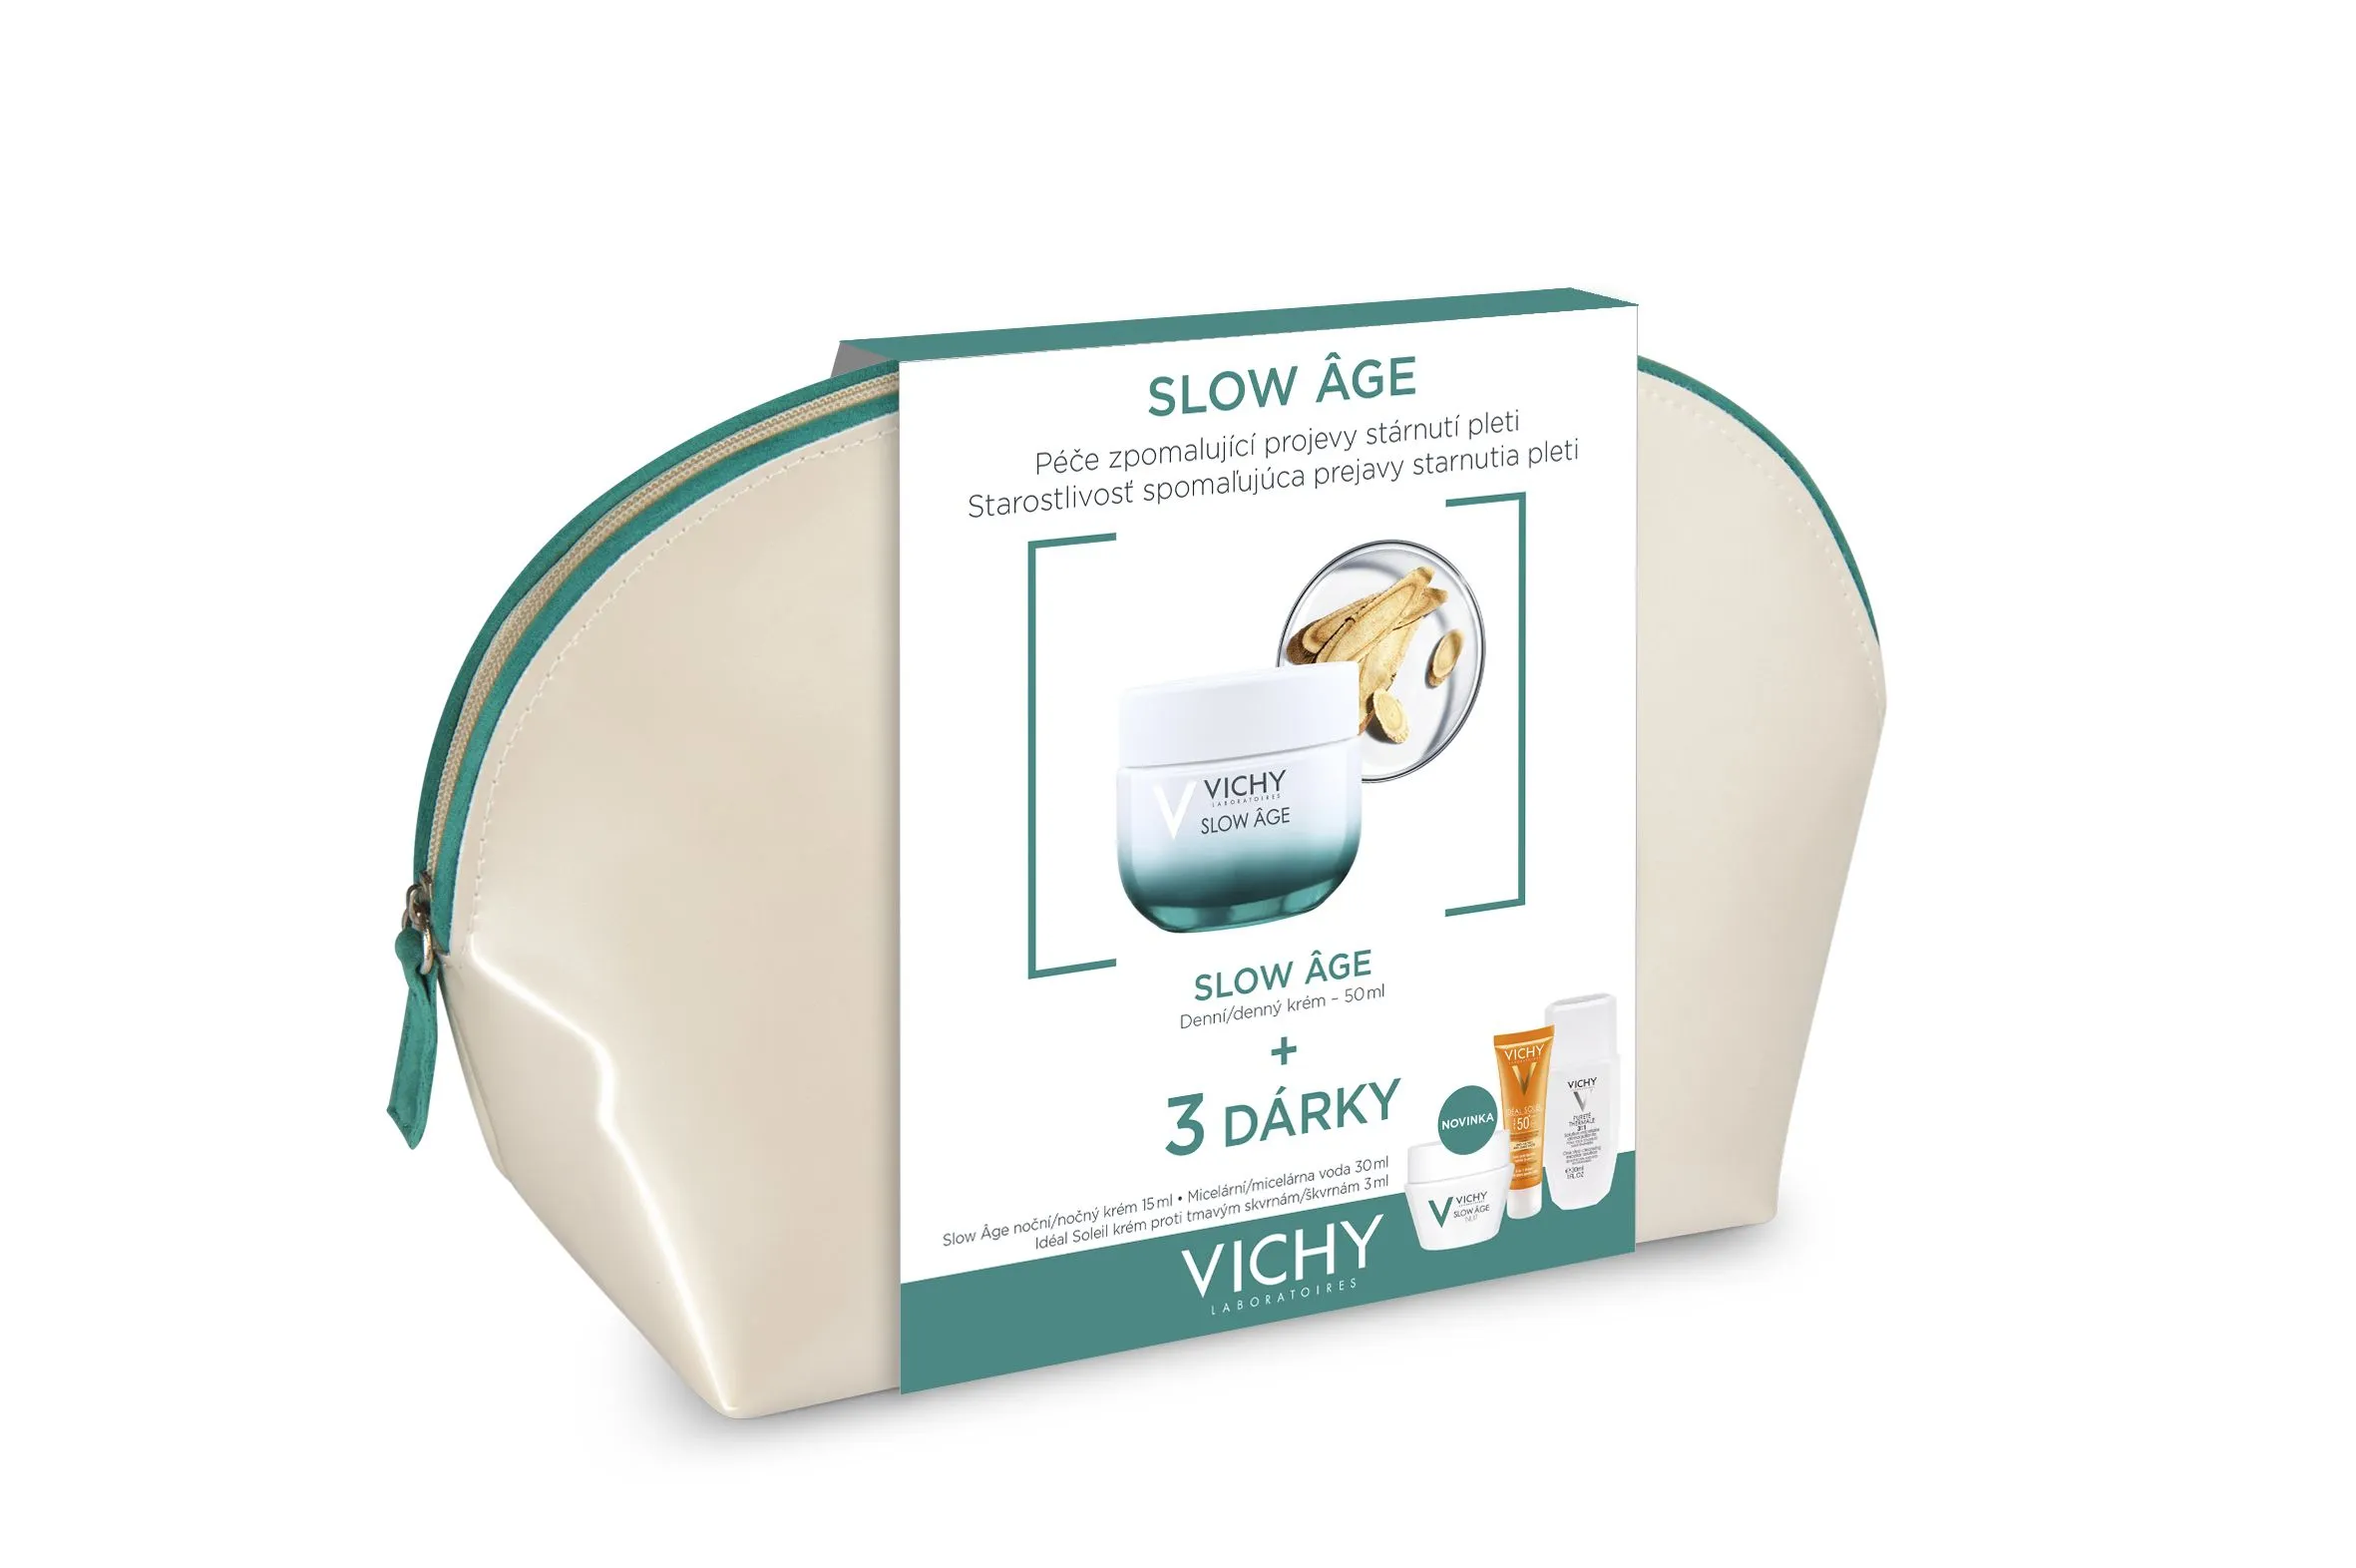 Vichy Slow Age Antiage promo bag